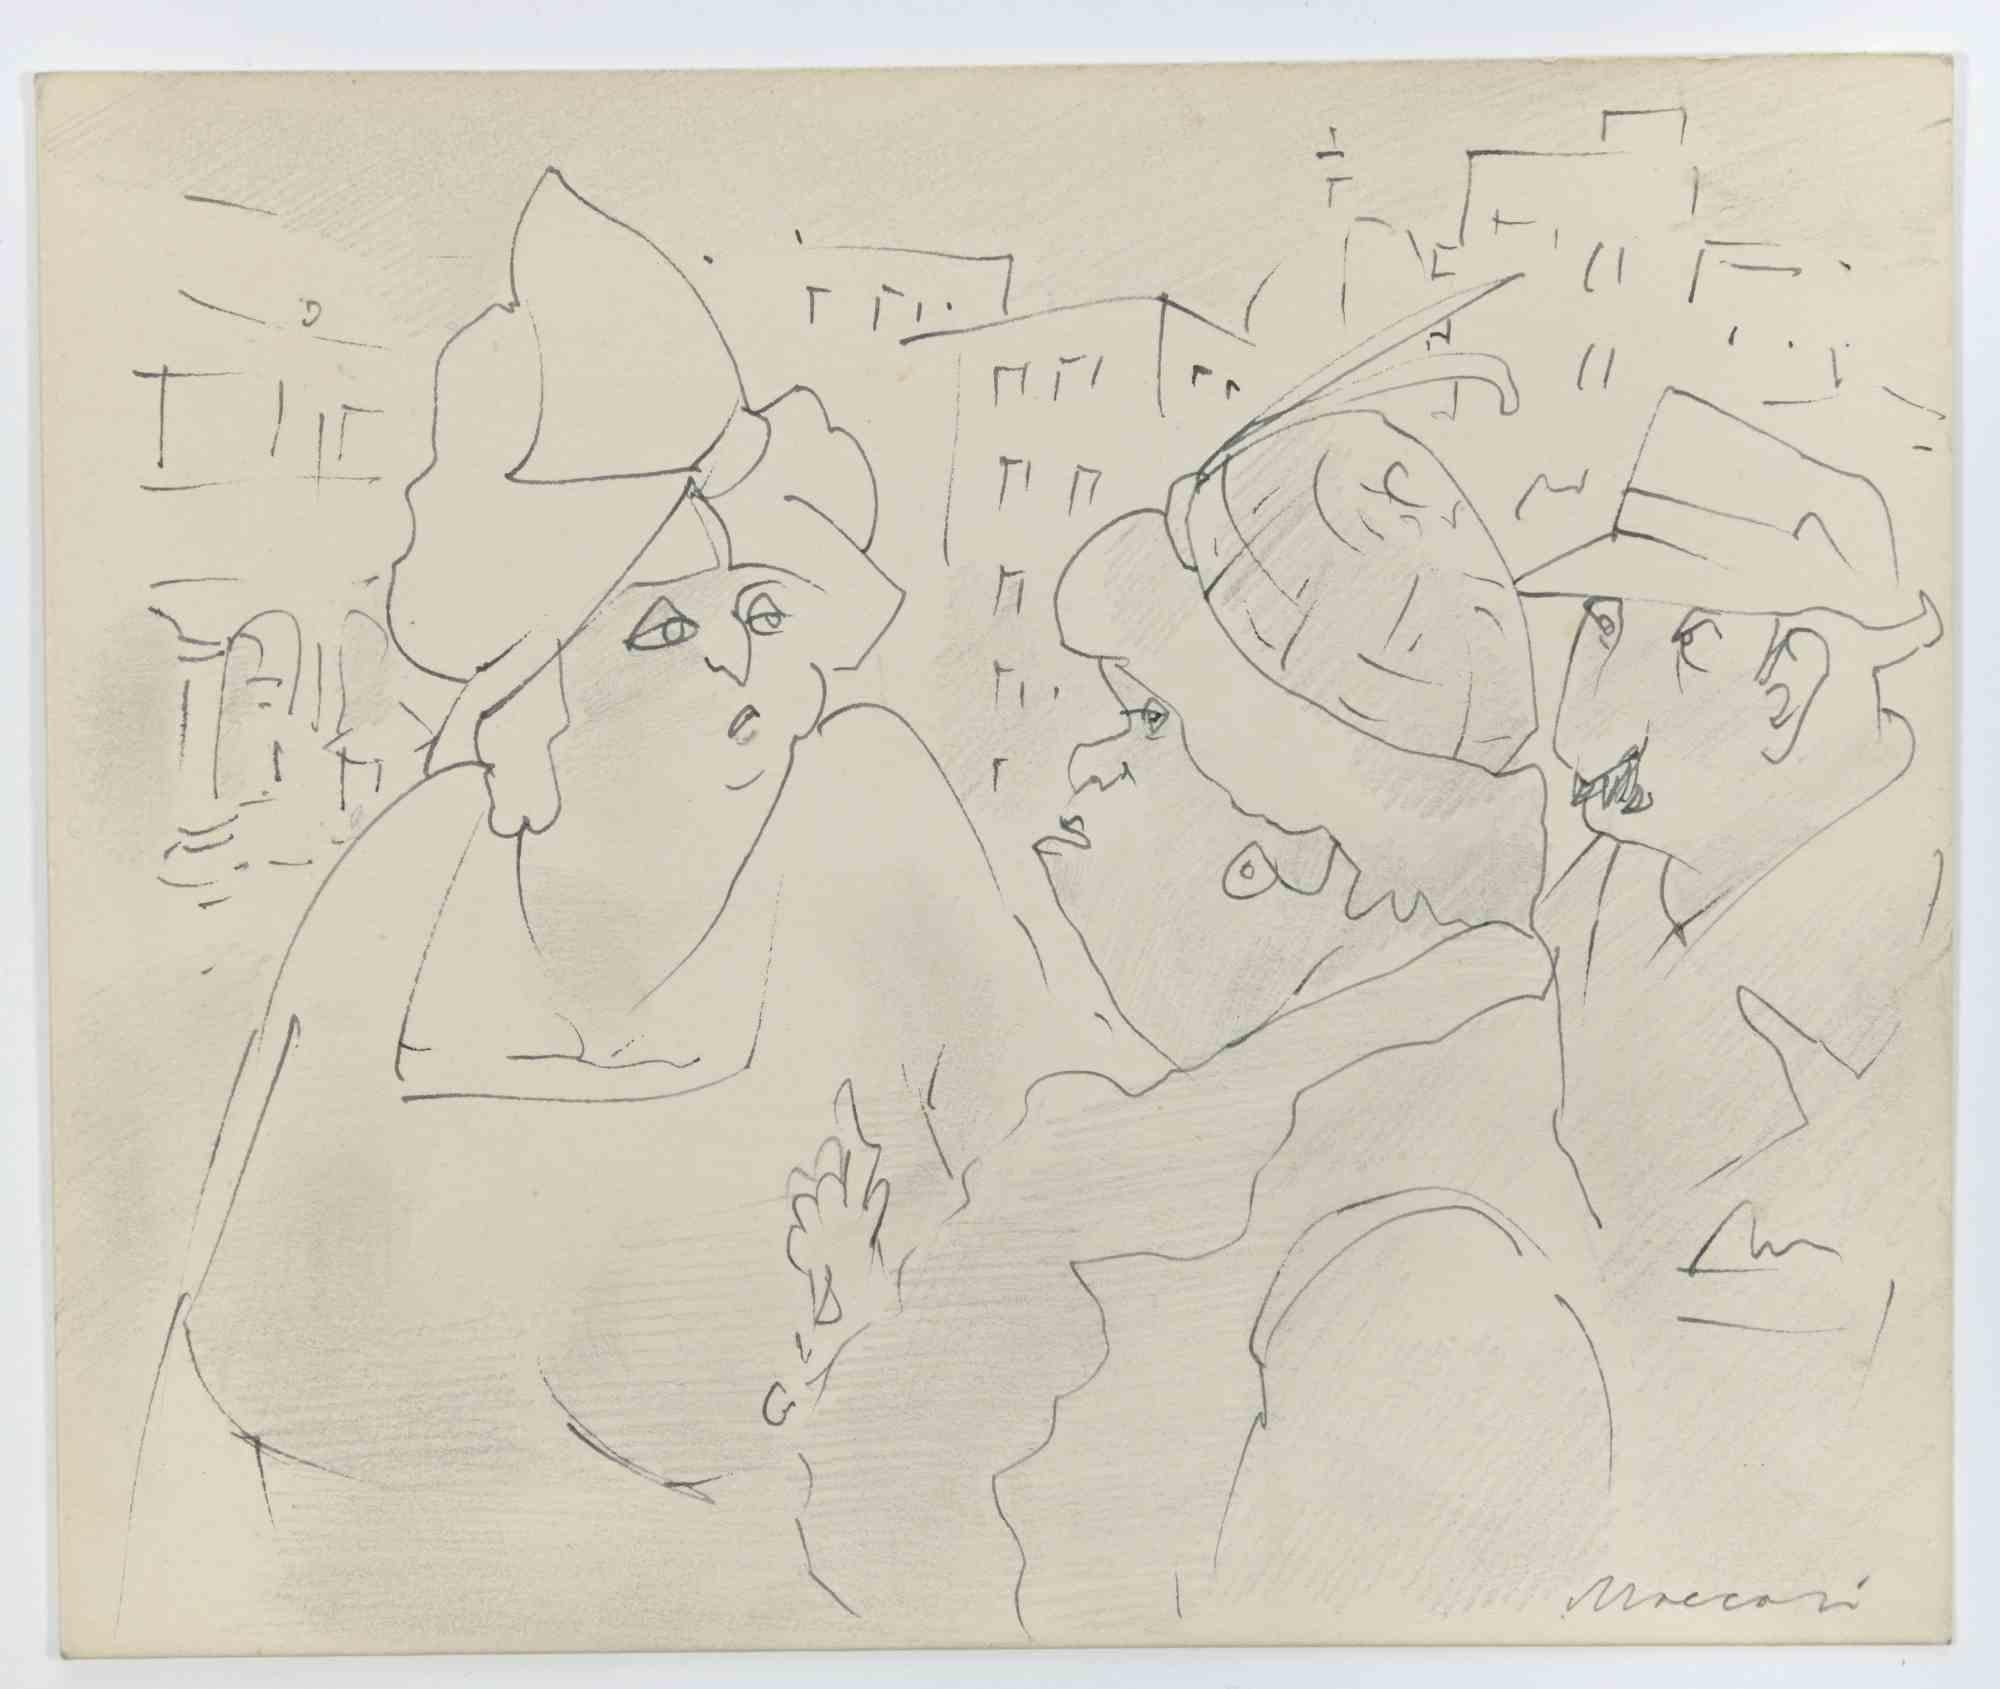 Snobby est un dessin à la plume réalisé par Mino Maccari  (1924-1989) dans les années 1960.

Signé à la main dans la marge inférieure.

Bon état.

Mino Maccari (Sienne, 1924-Rome, 16 juin 1989) est un écrivain, peintre, graveur et journaliste